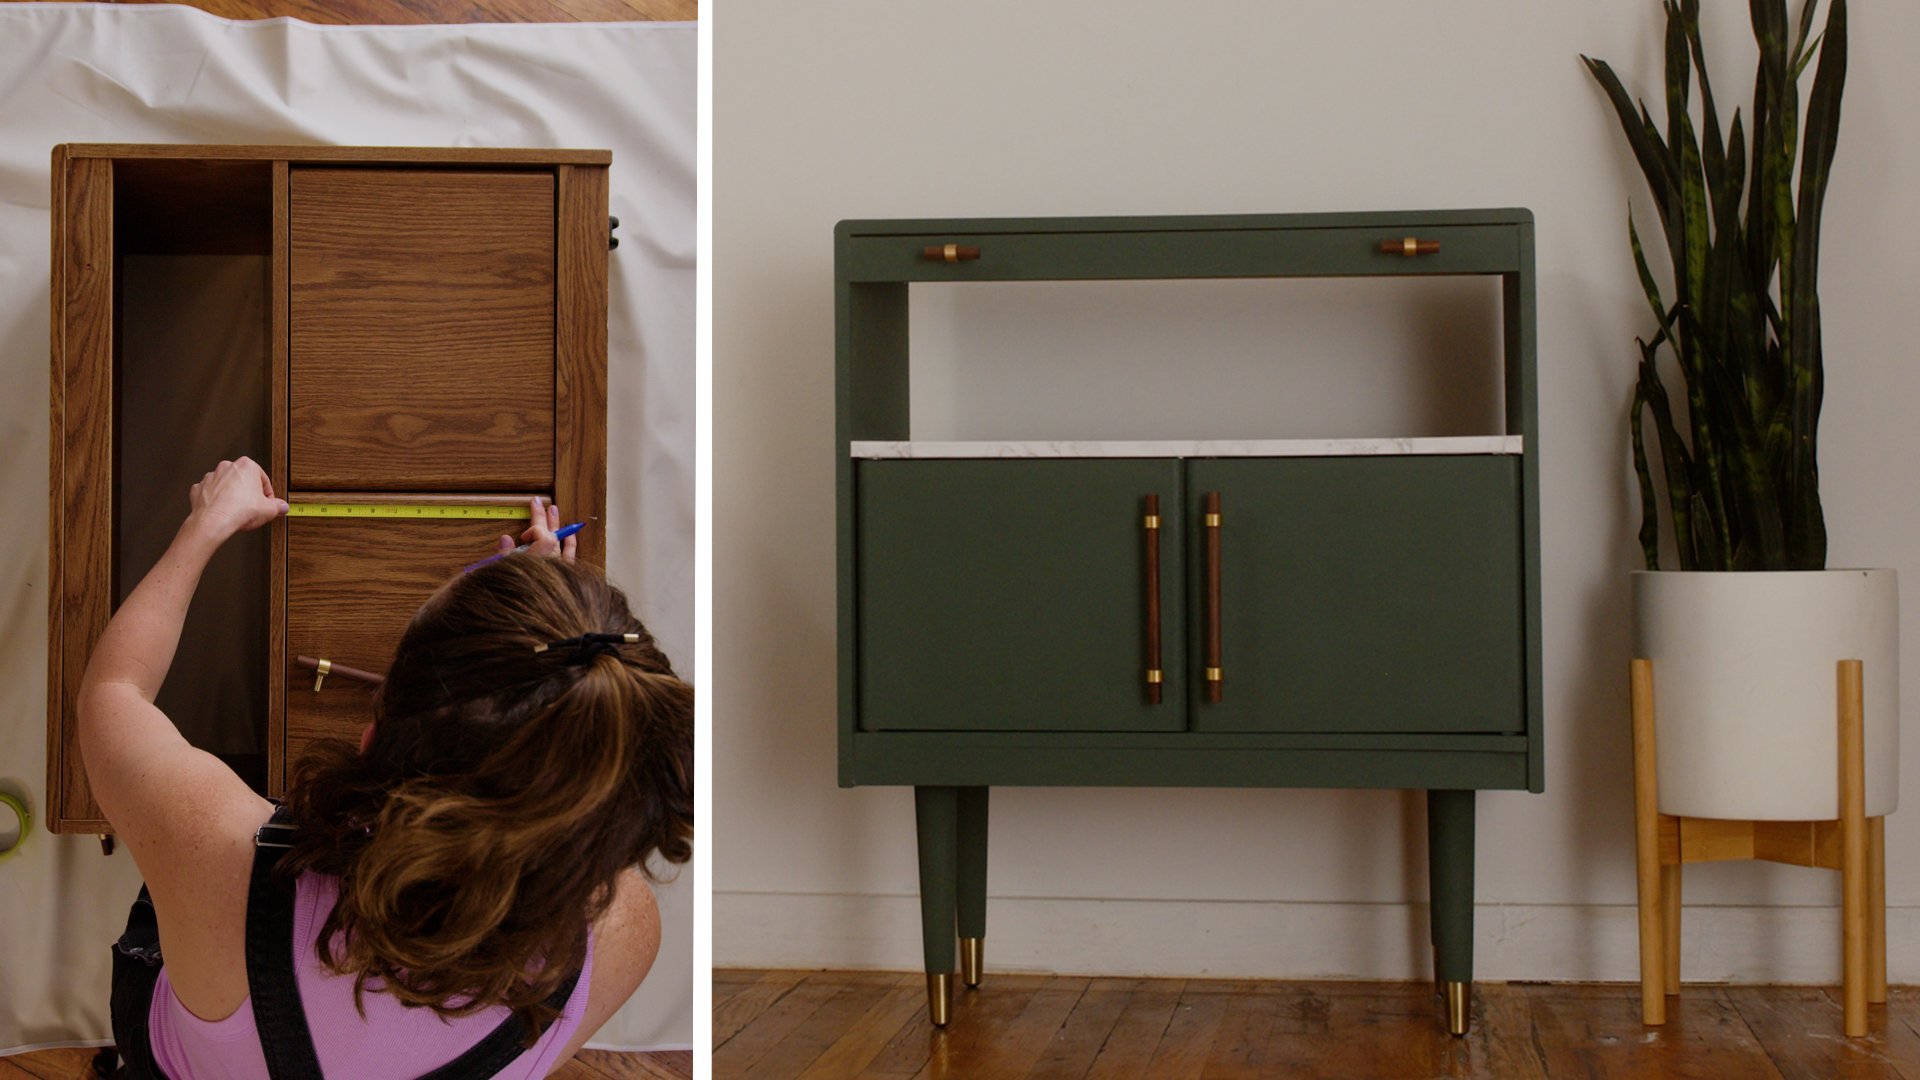 Upcycled Home Decor: Furniture Makeover for Beginners Skillshare Original